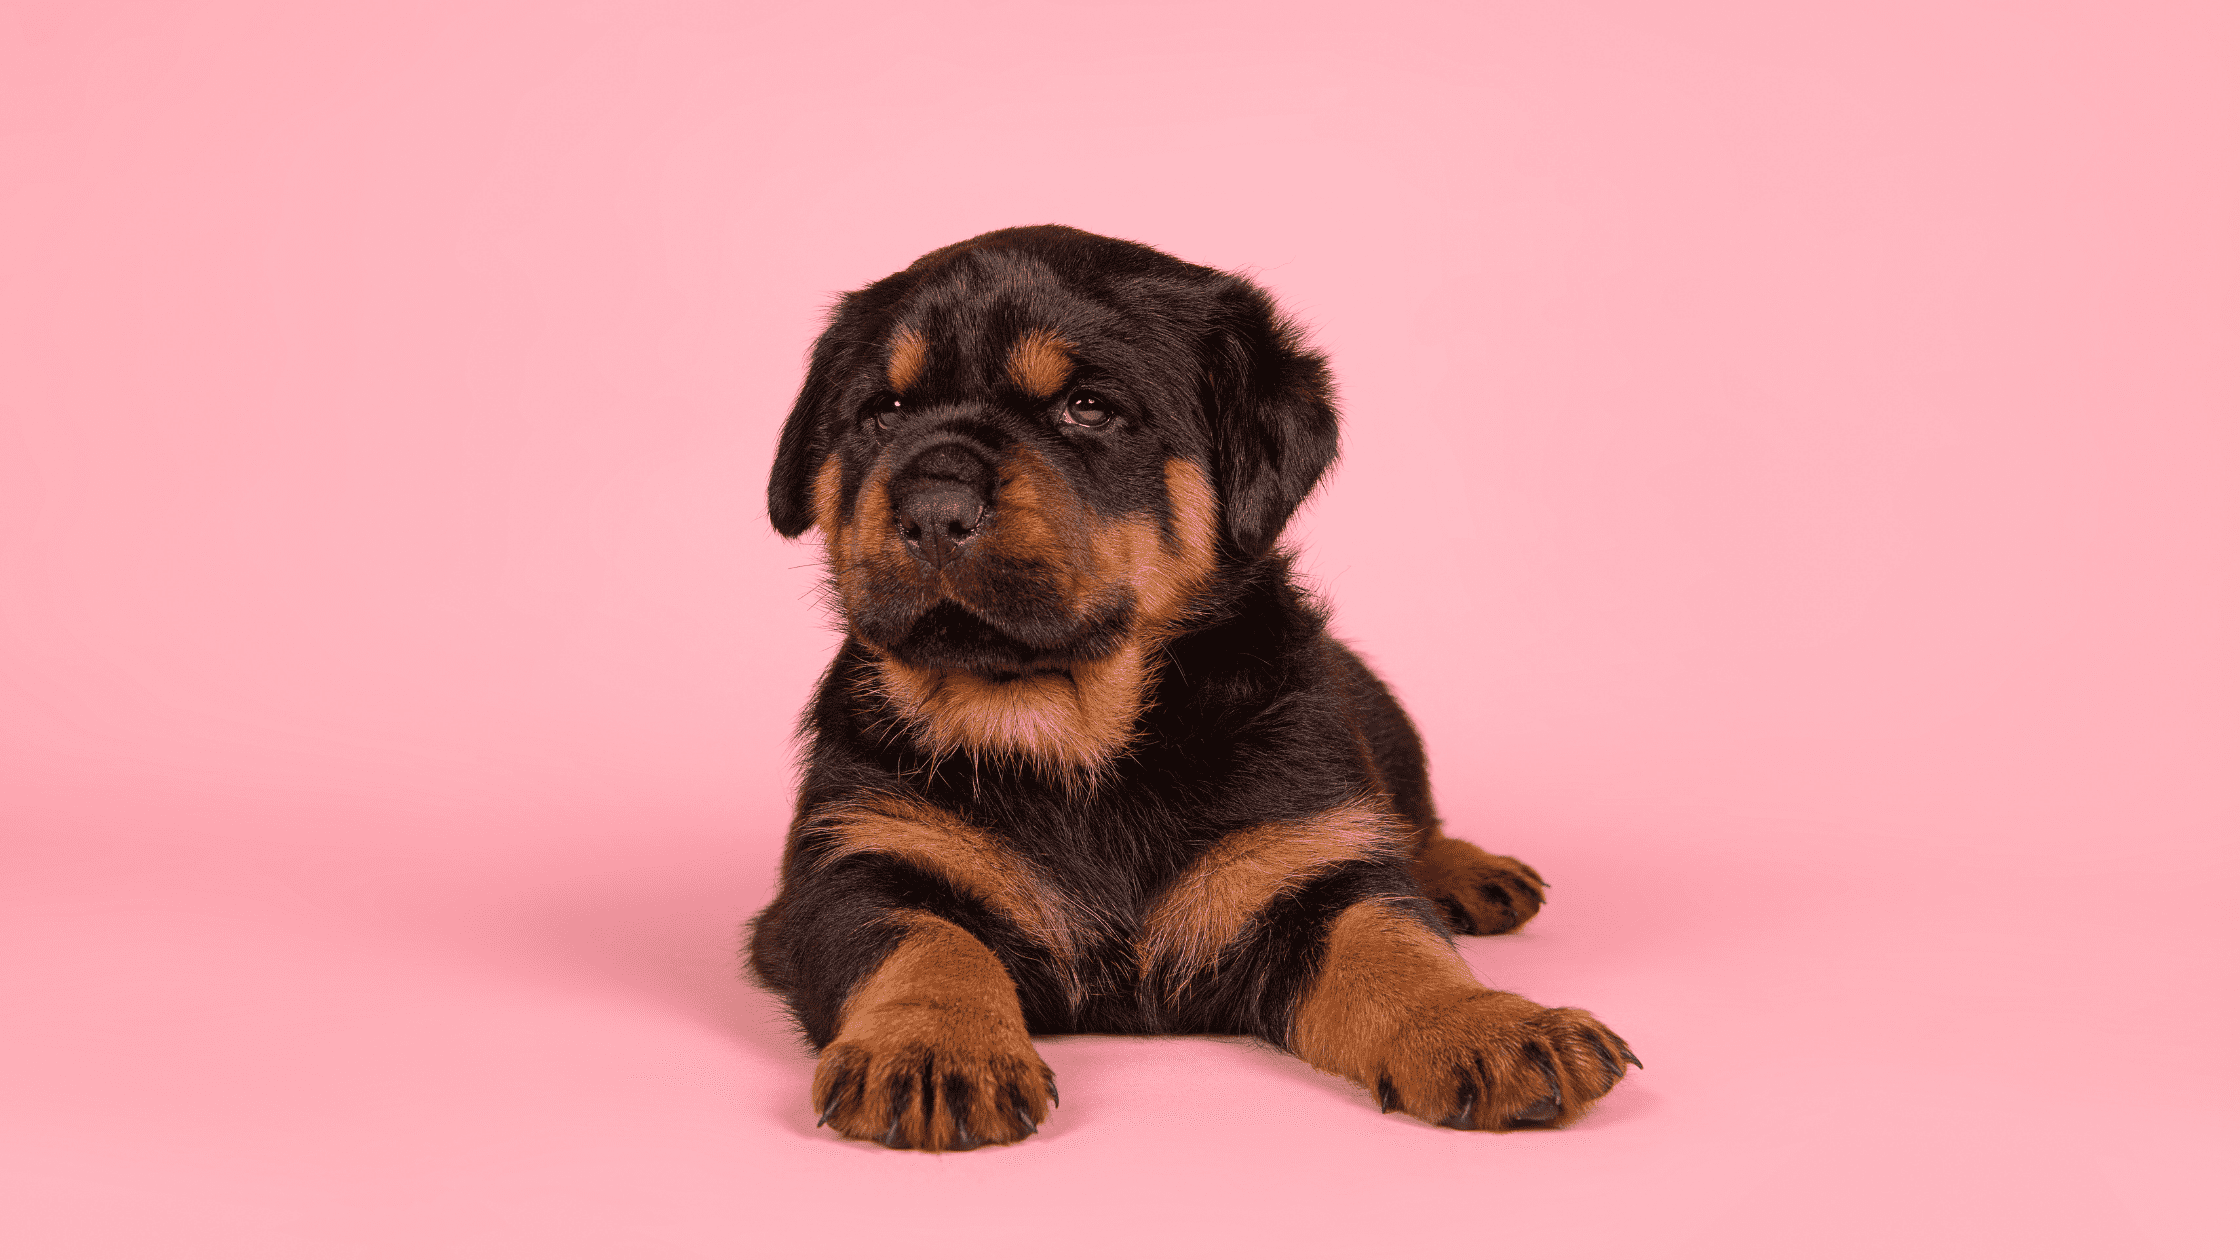 licensed dog breeder puppy pink background